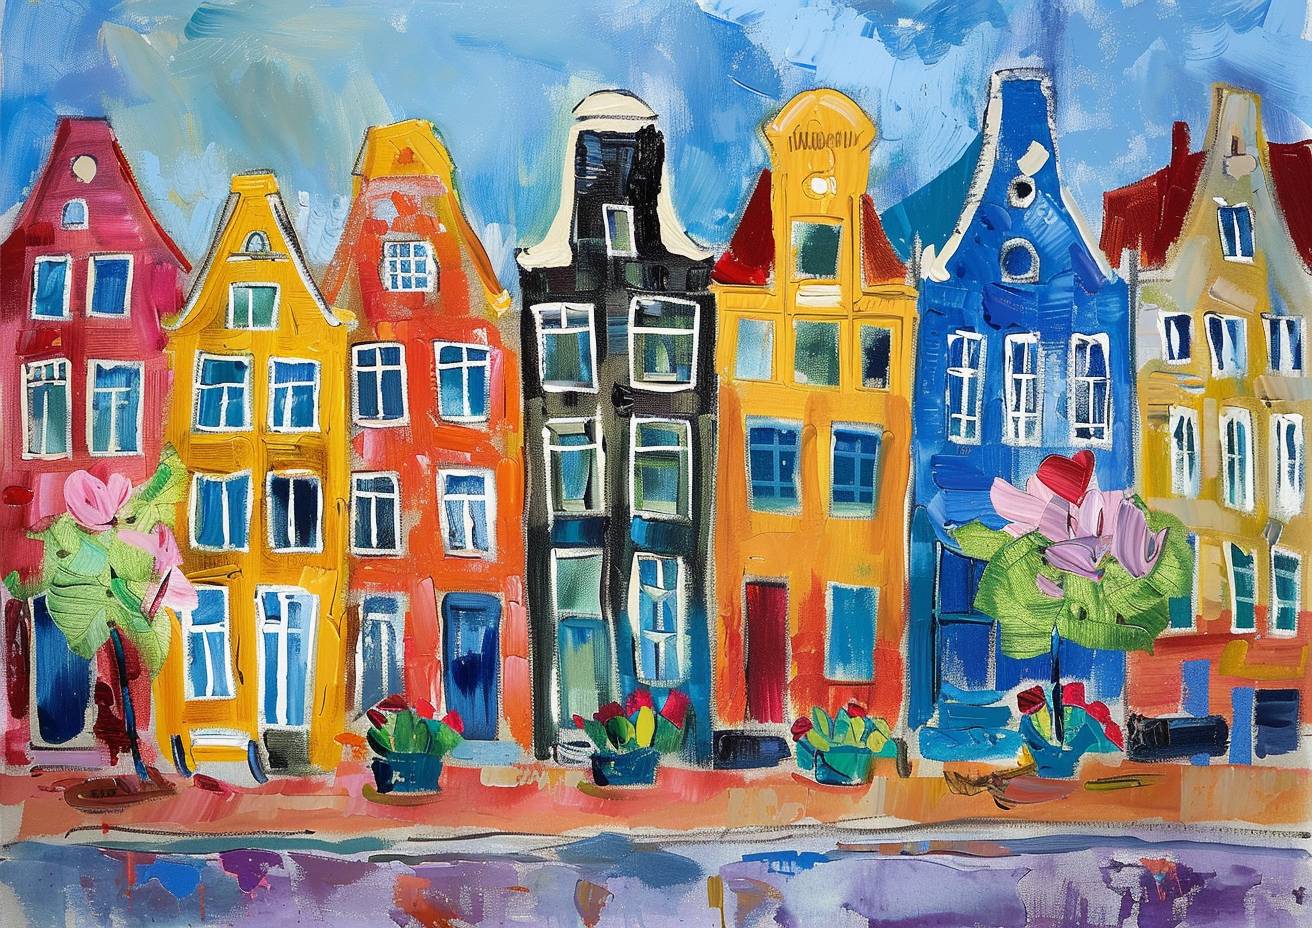 カラフルな影のスケッチ、アムステルダム、色鮮やかな連続した街並み、花々が咲く魅力的な通り、夏、イングランド、ソフィー・ブラッカルやモード・ルイス、シャガールによる驚くほど独創的で素晴らしい絵画、素晴らしい筆触、鋭い、ハイクオリティ、傑作、超鋭利